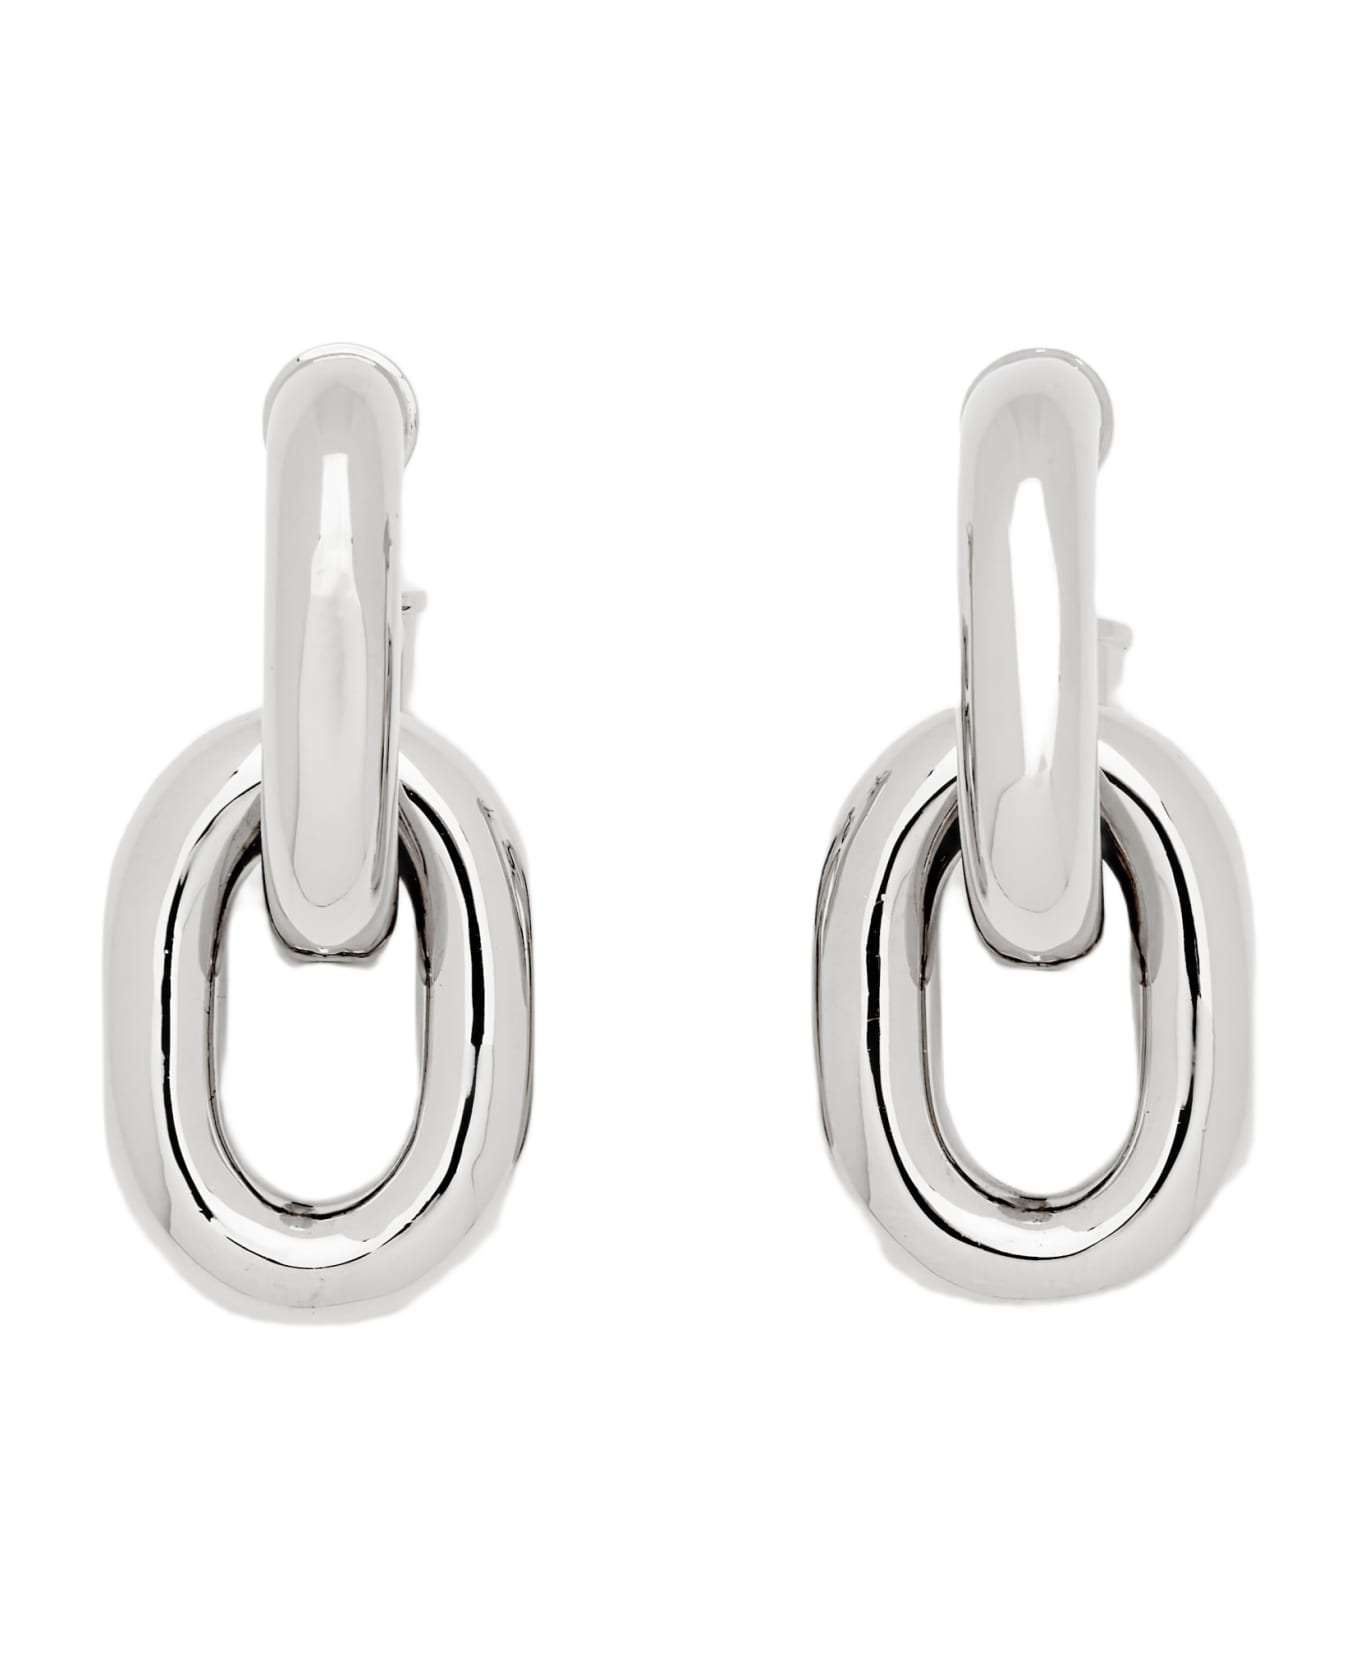 Paco Rabanne Xl Link Double Hoop Earrings - Silver ネックレス